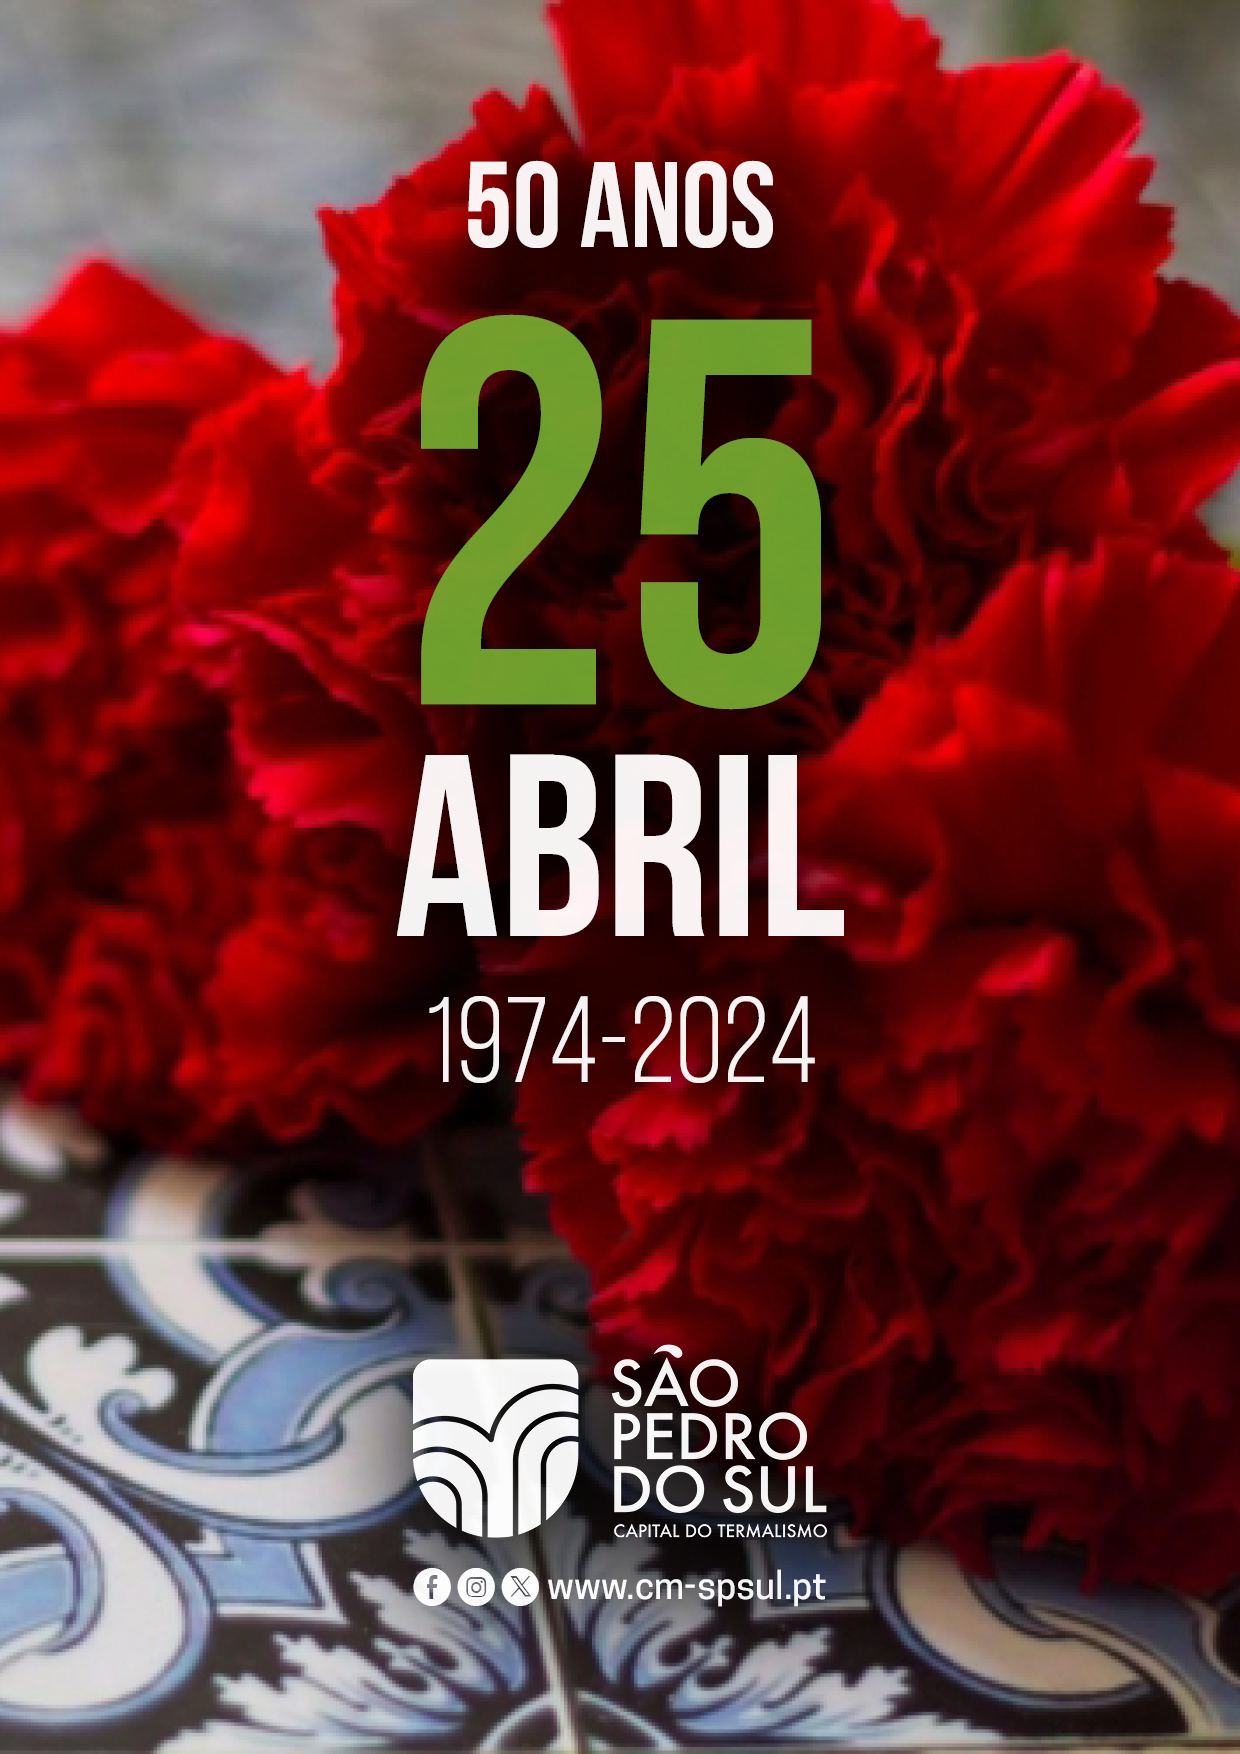 Capa Oficial do Evento S. PEDRO DO SUL 50 ANOS 25 DE ABRIL 1974-2024